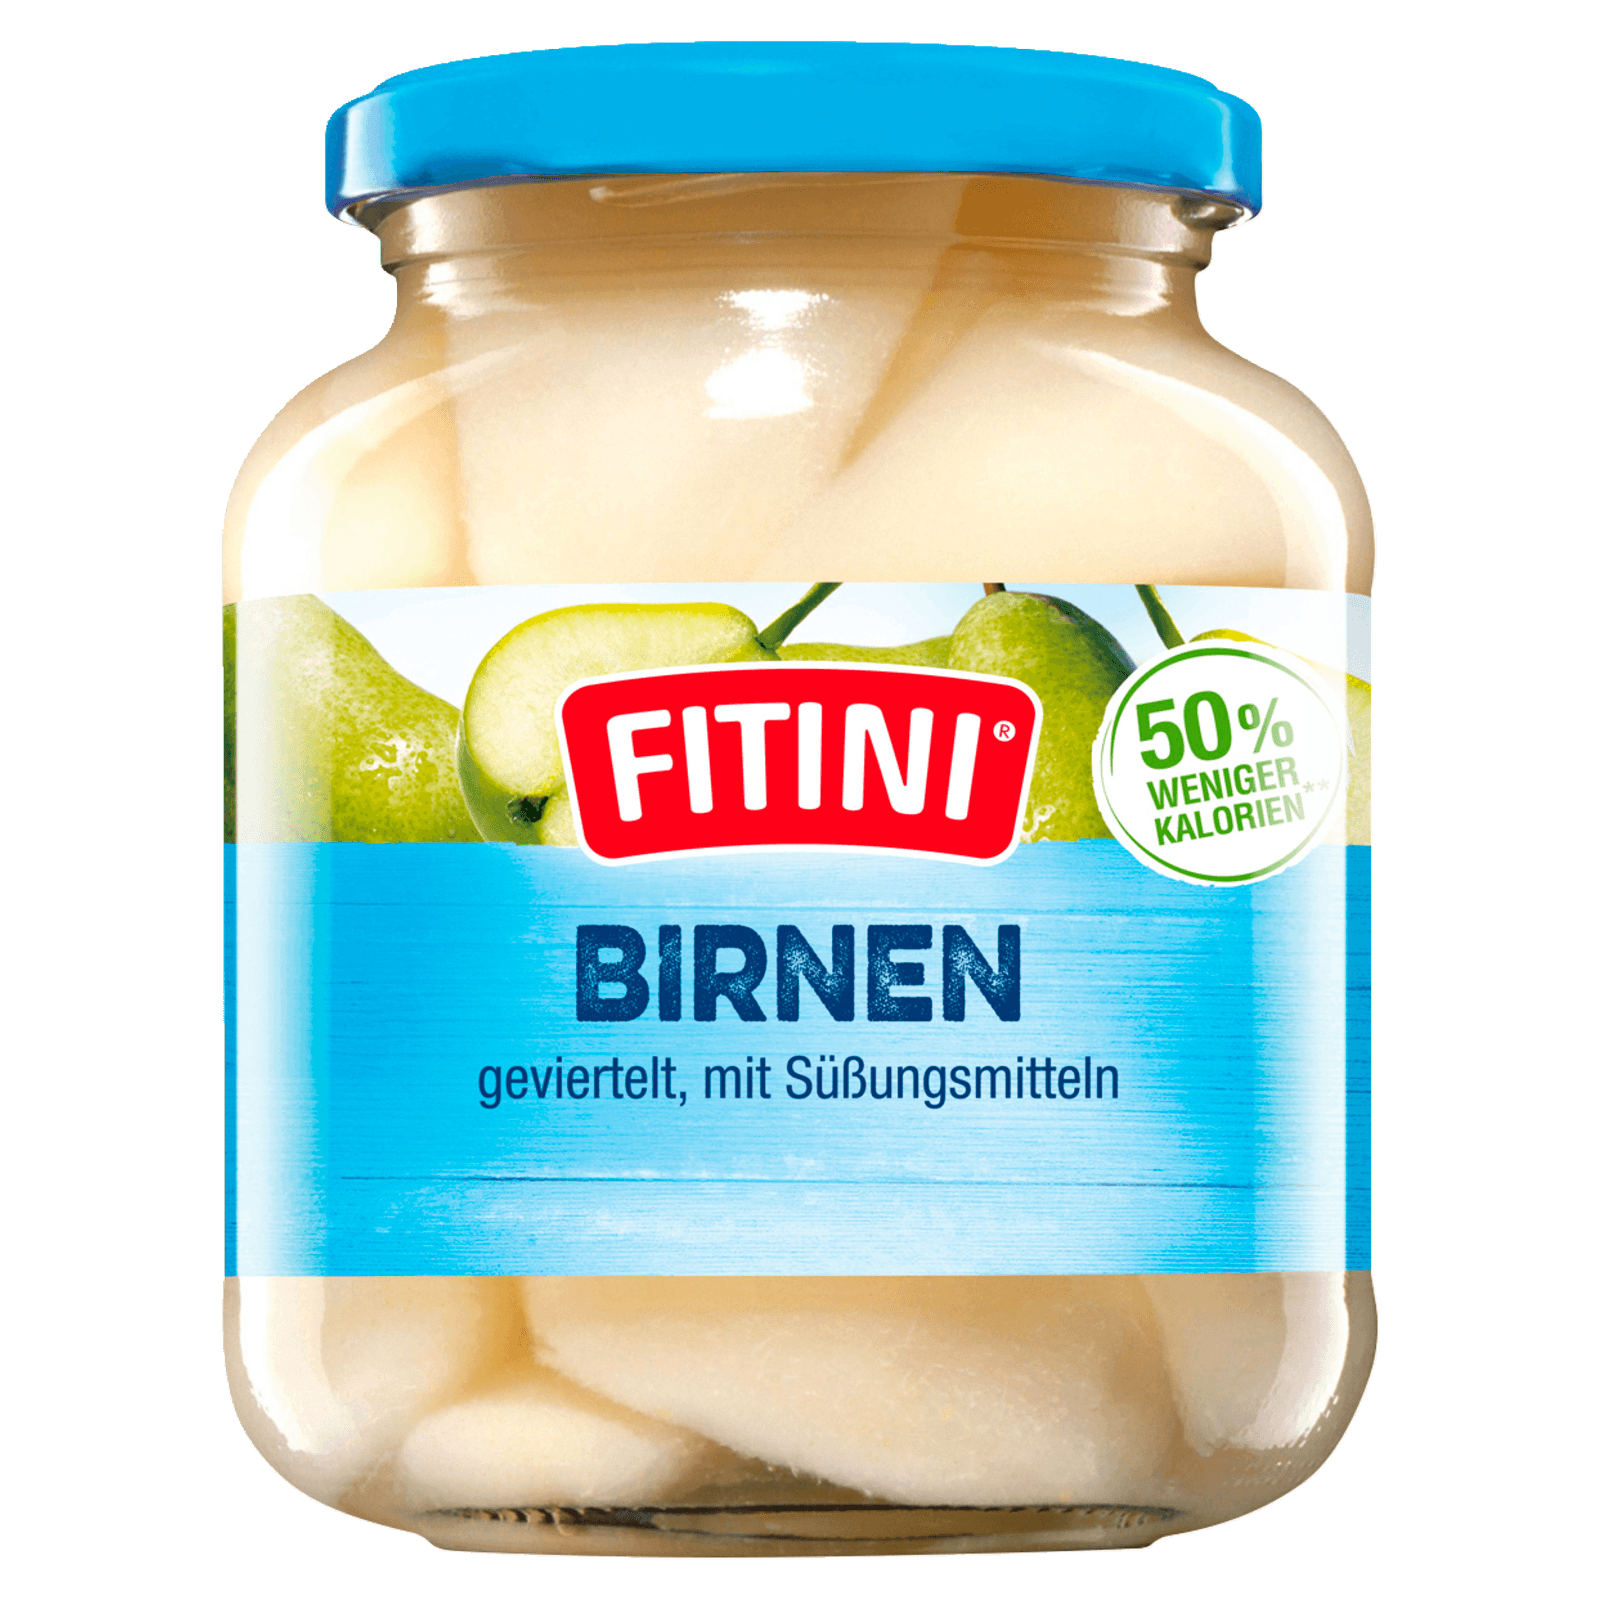 Fitini Birnen geviertelt 370ml bei REWE online bestellen!